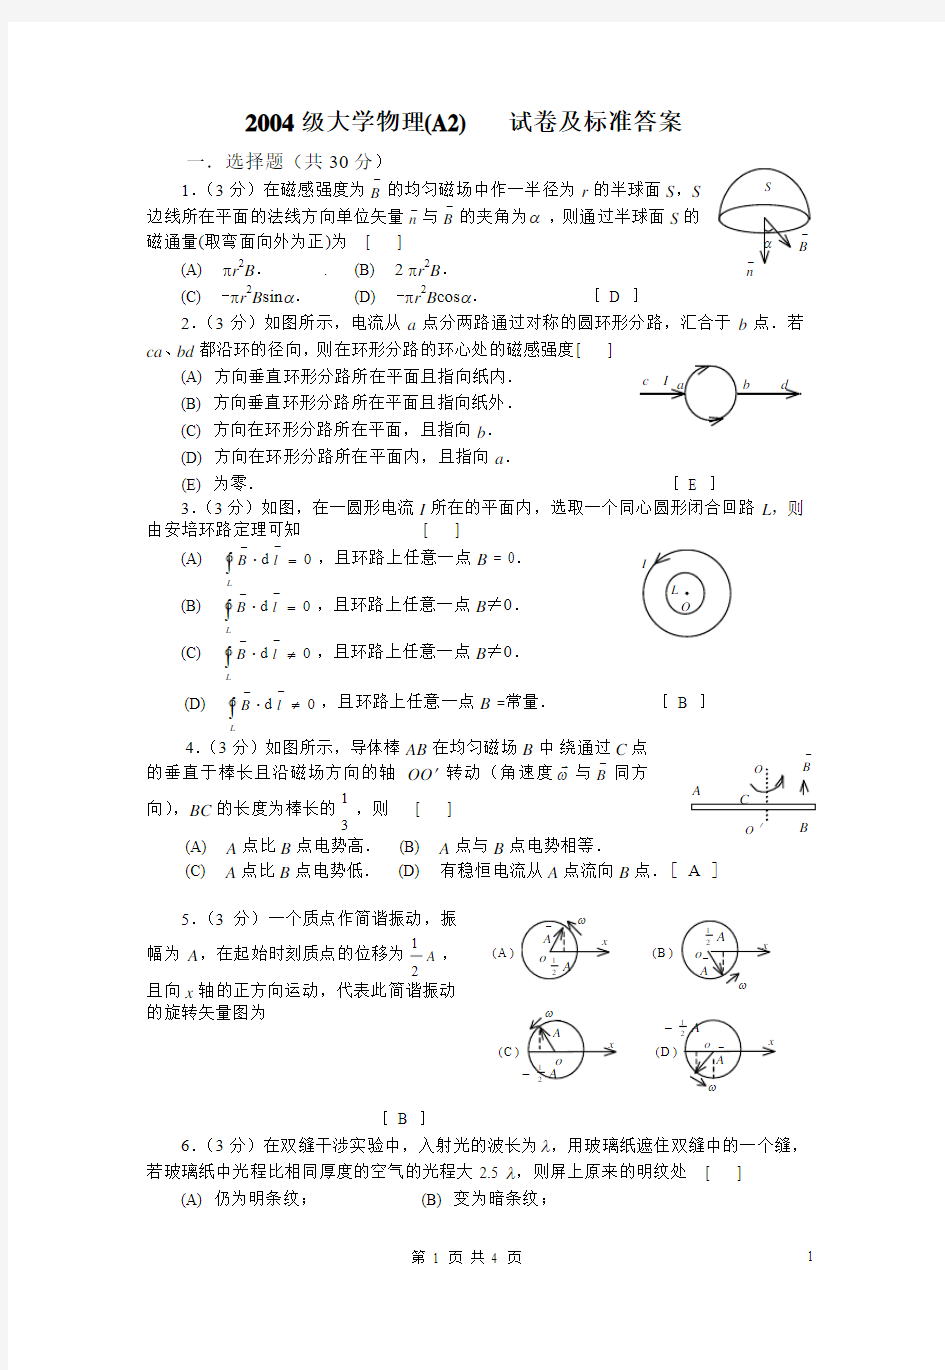 河南科技大学2004物理A2试卷及答案